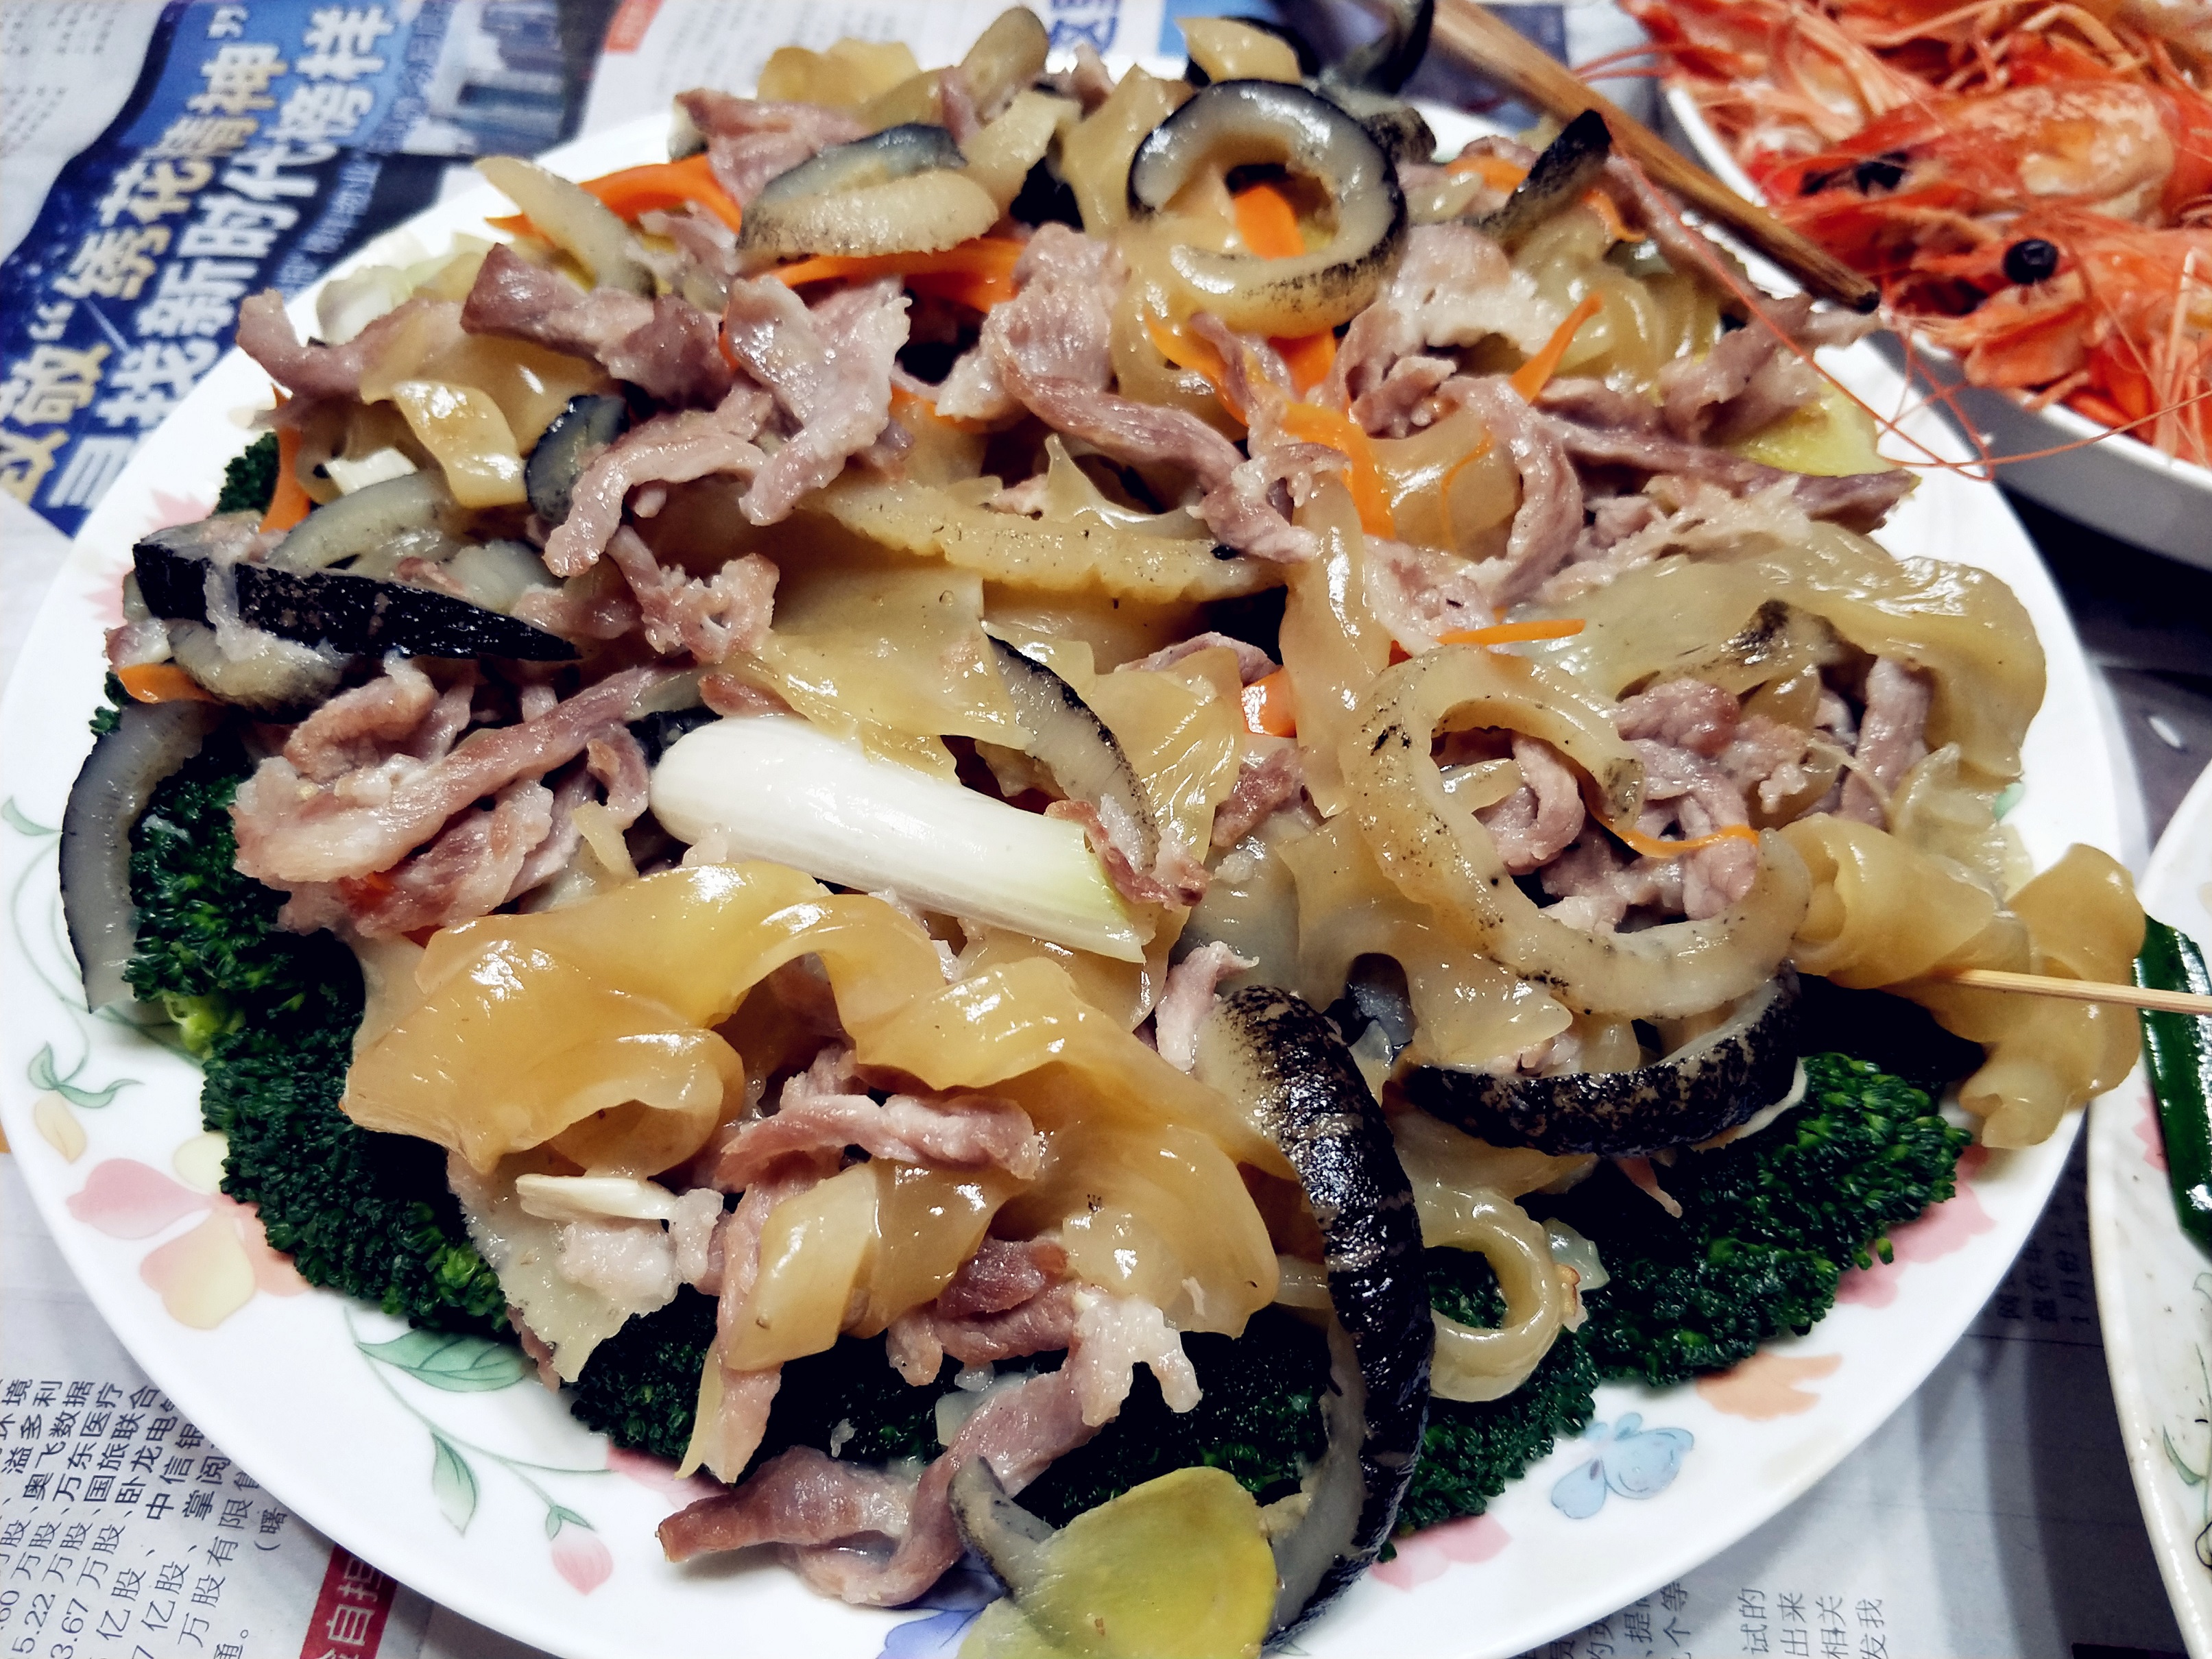 第六道:发菜蚝豉冬菇焖猪手这是一道传统广州意头菜